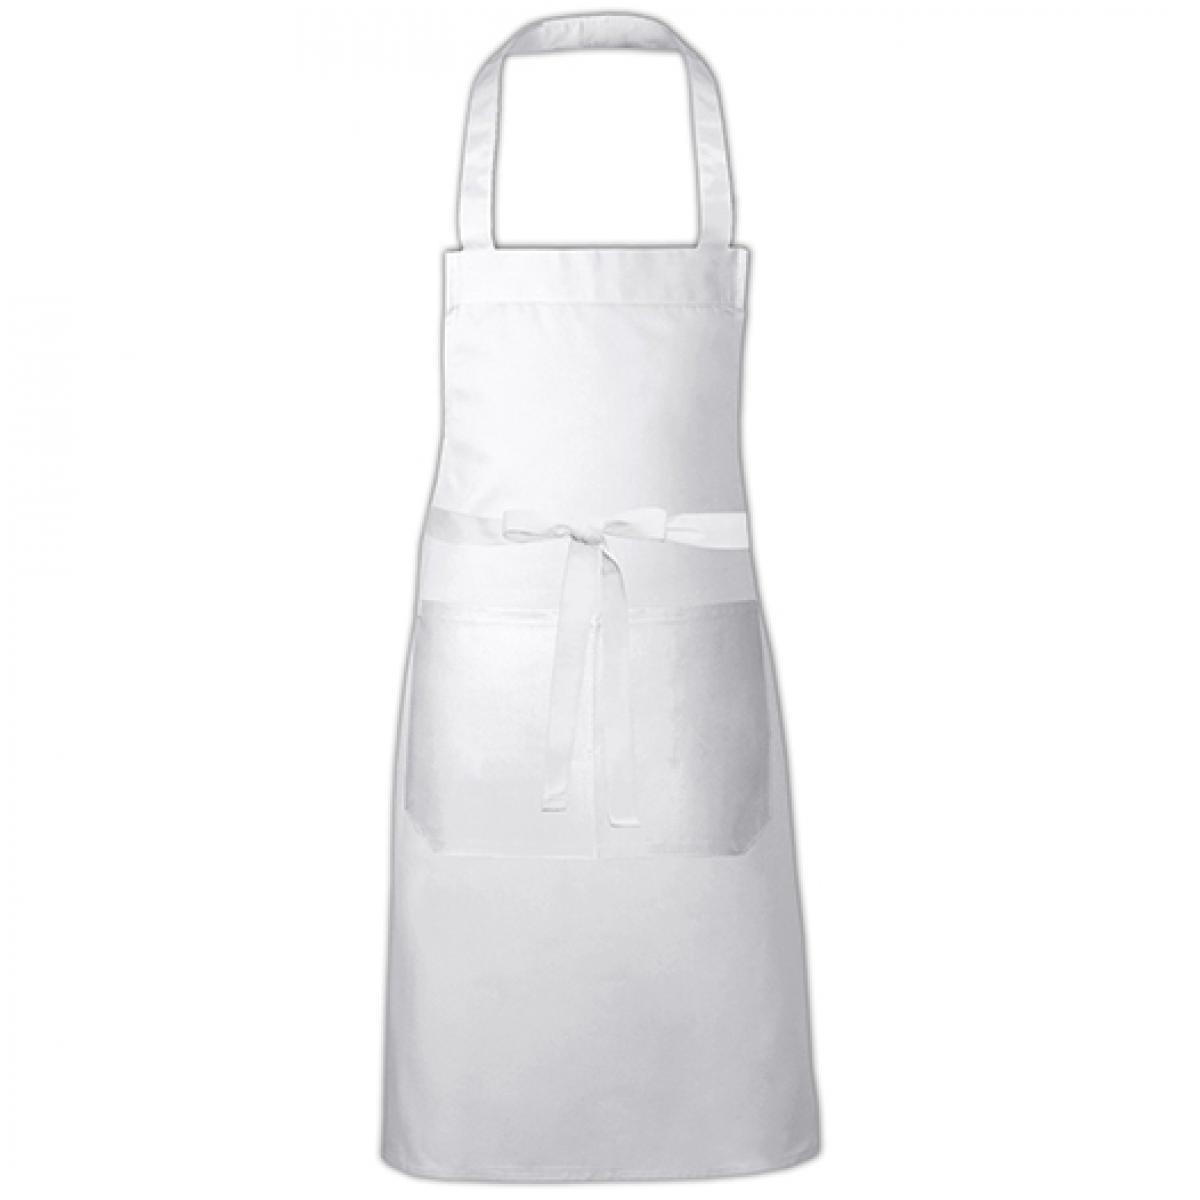 Hersteller: Link Kitchen Wear Herstellernummer: HSC8070 Artikelbezeichnung: Cotton Hobby Apron - Kochschürze Farbe: White